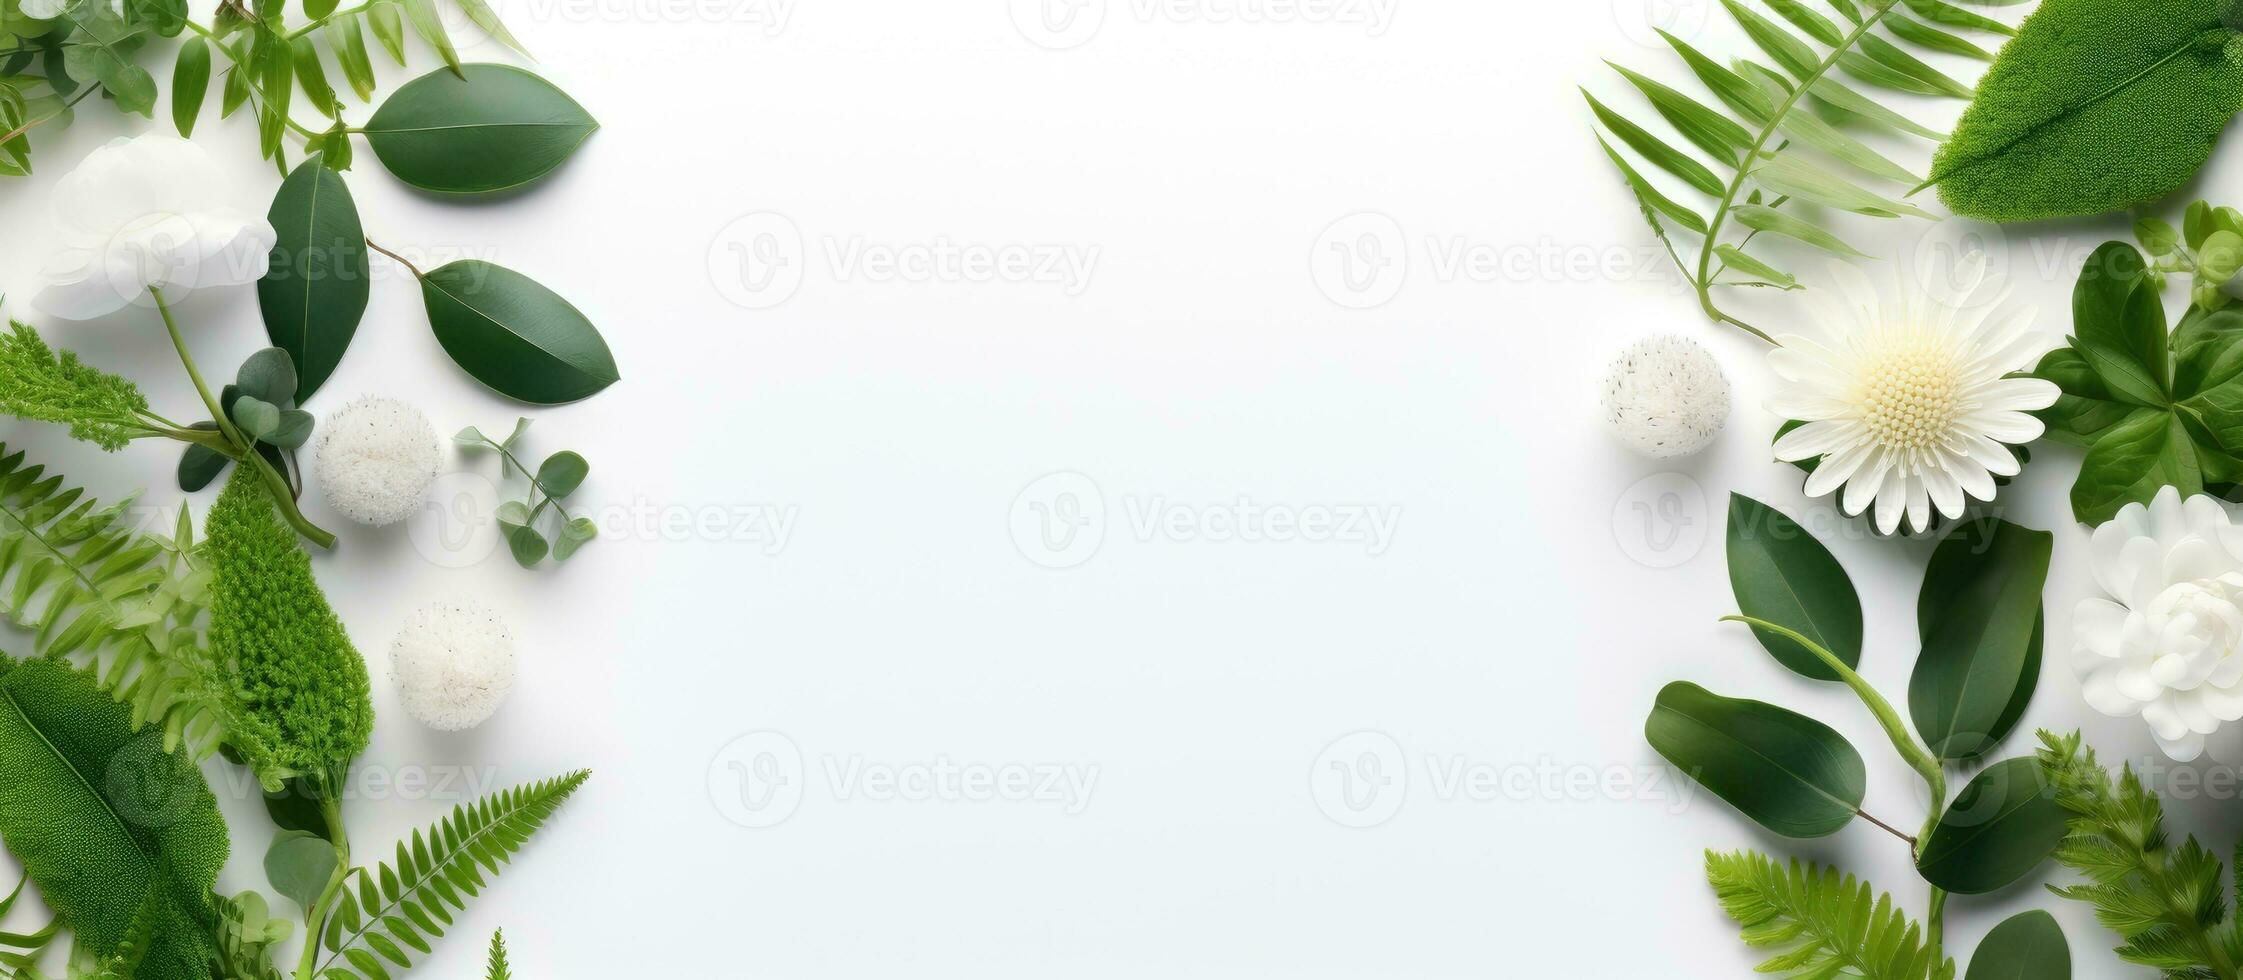 une floral arrangement avec vide espace dans le milieu. le vert feuilles de eucalyptus, fougère, et photo